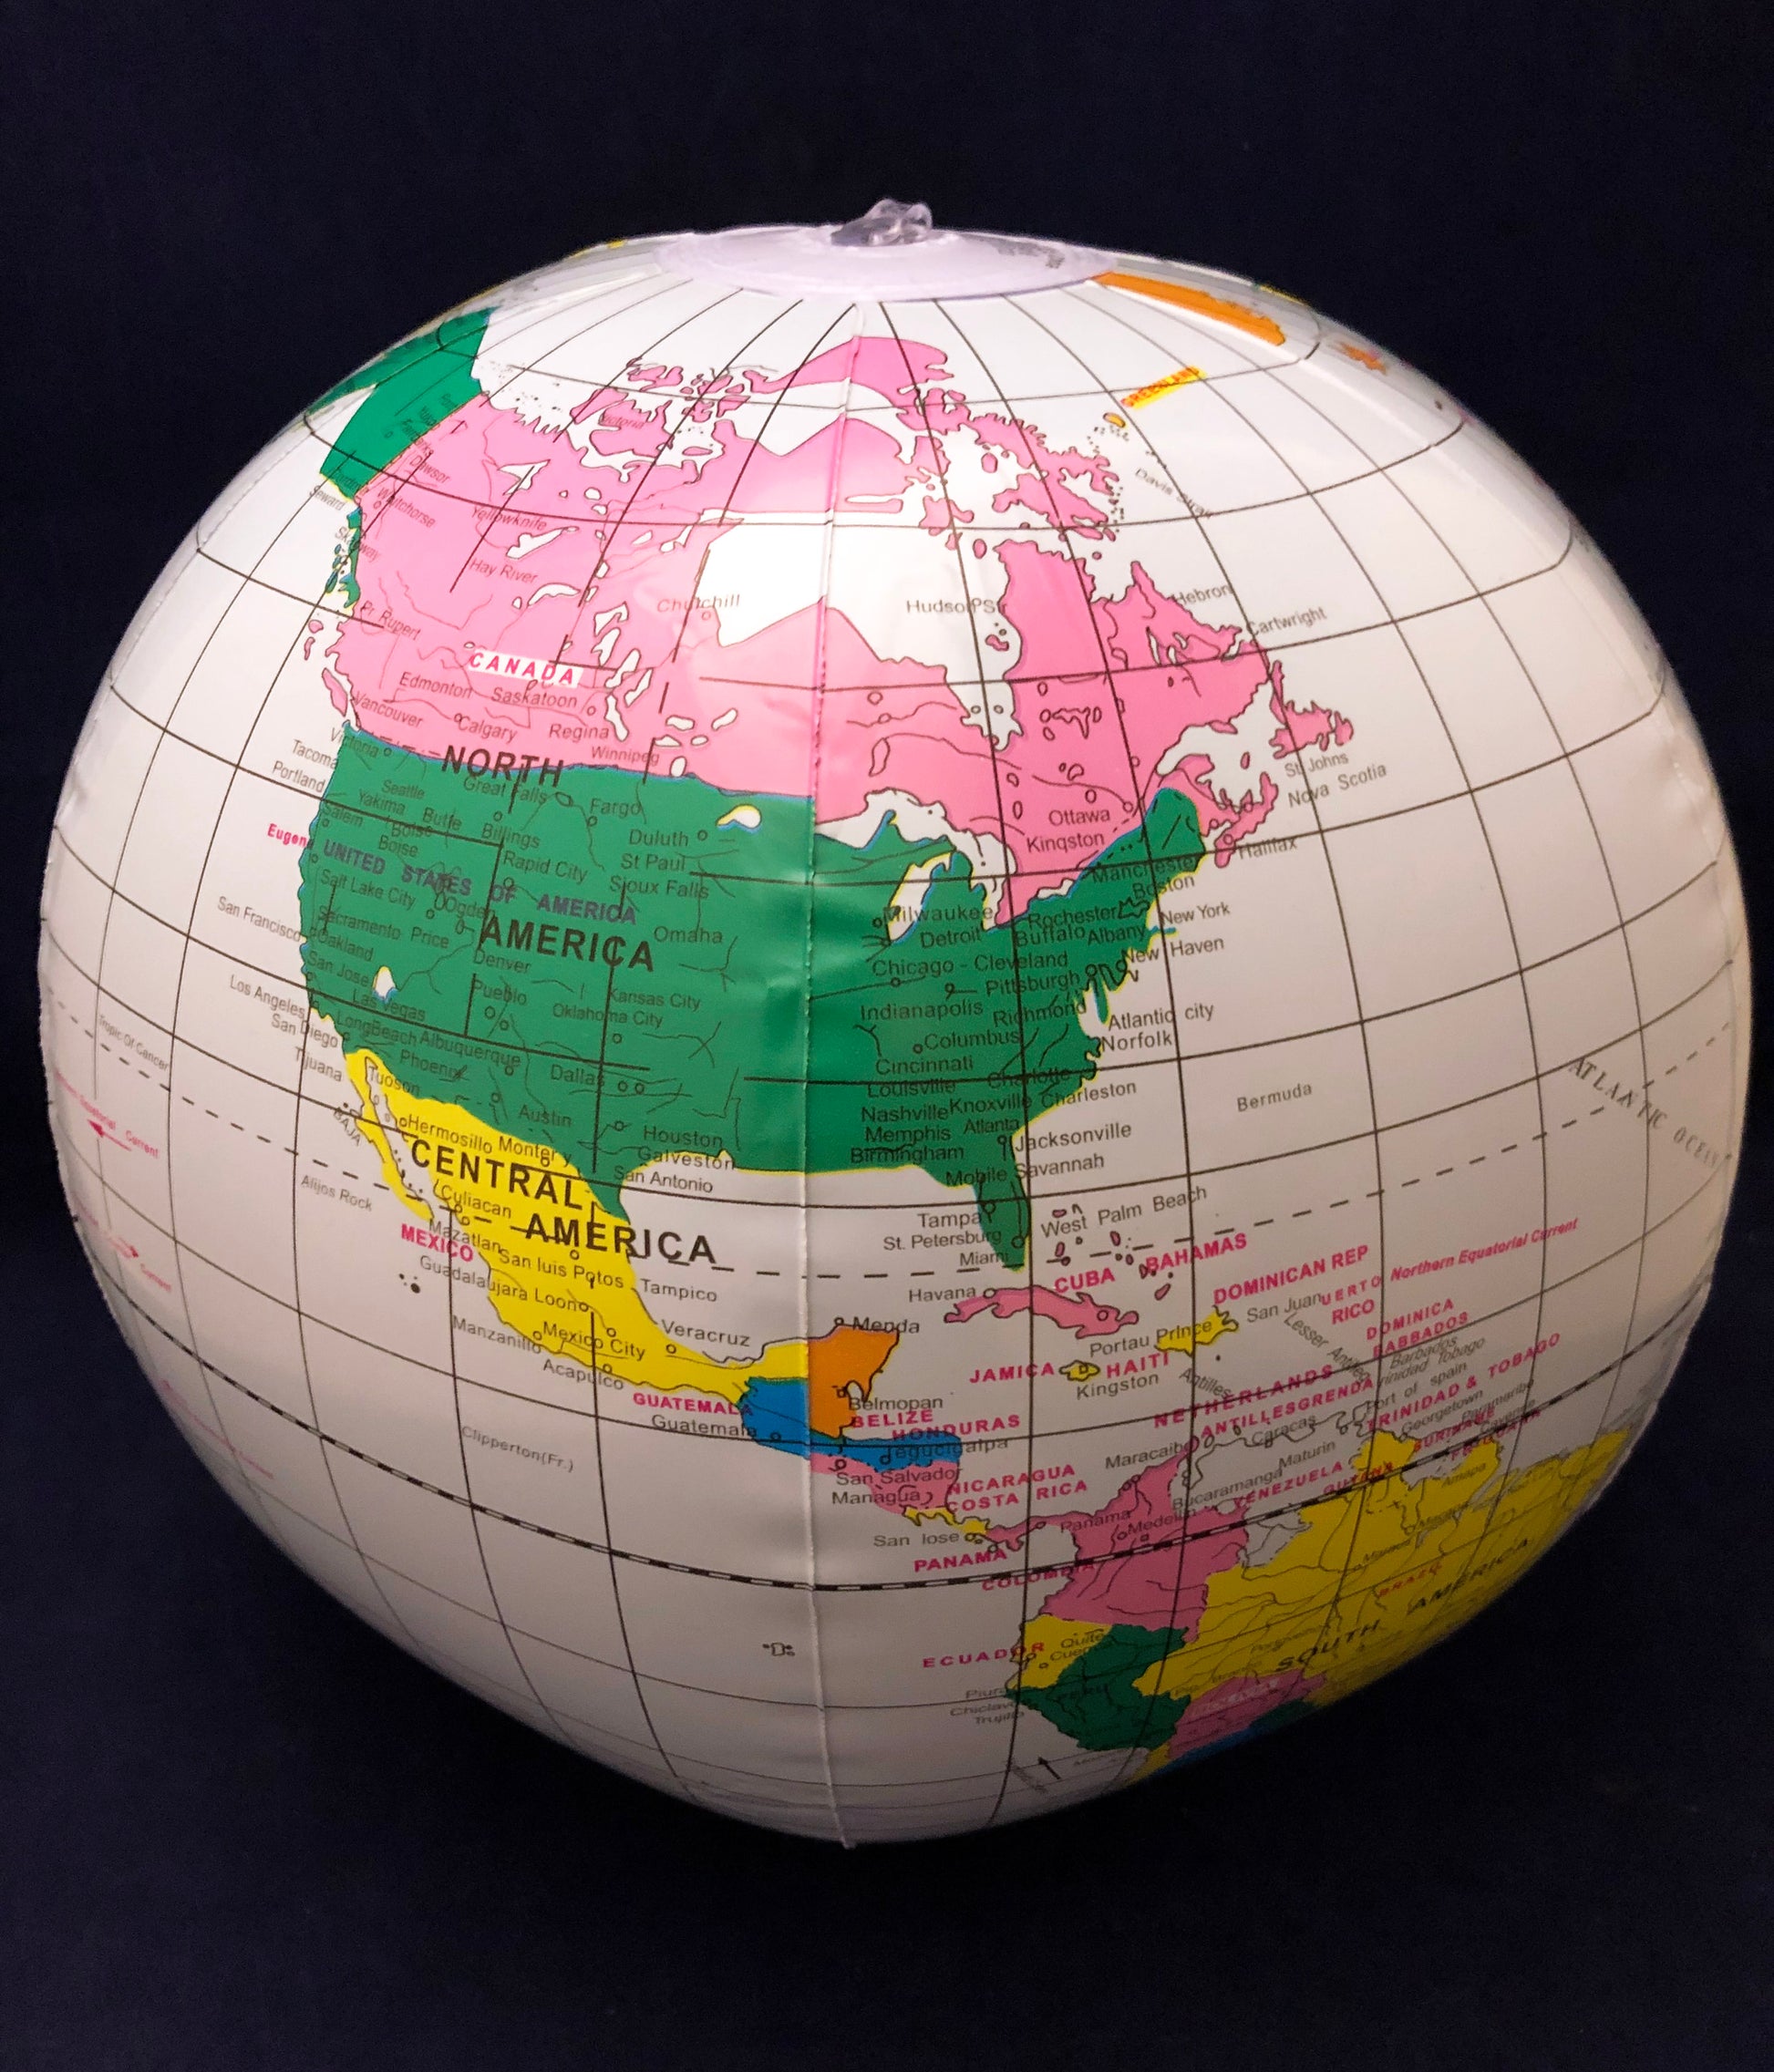 inflatable globe